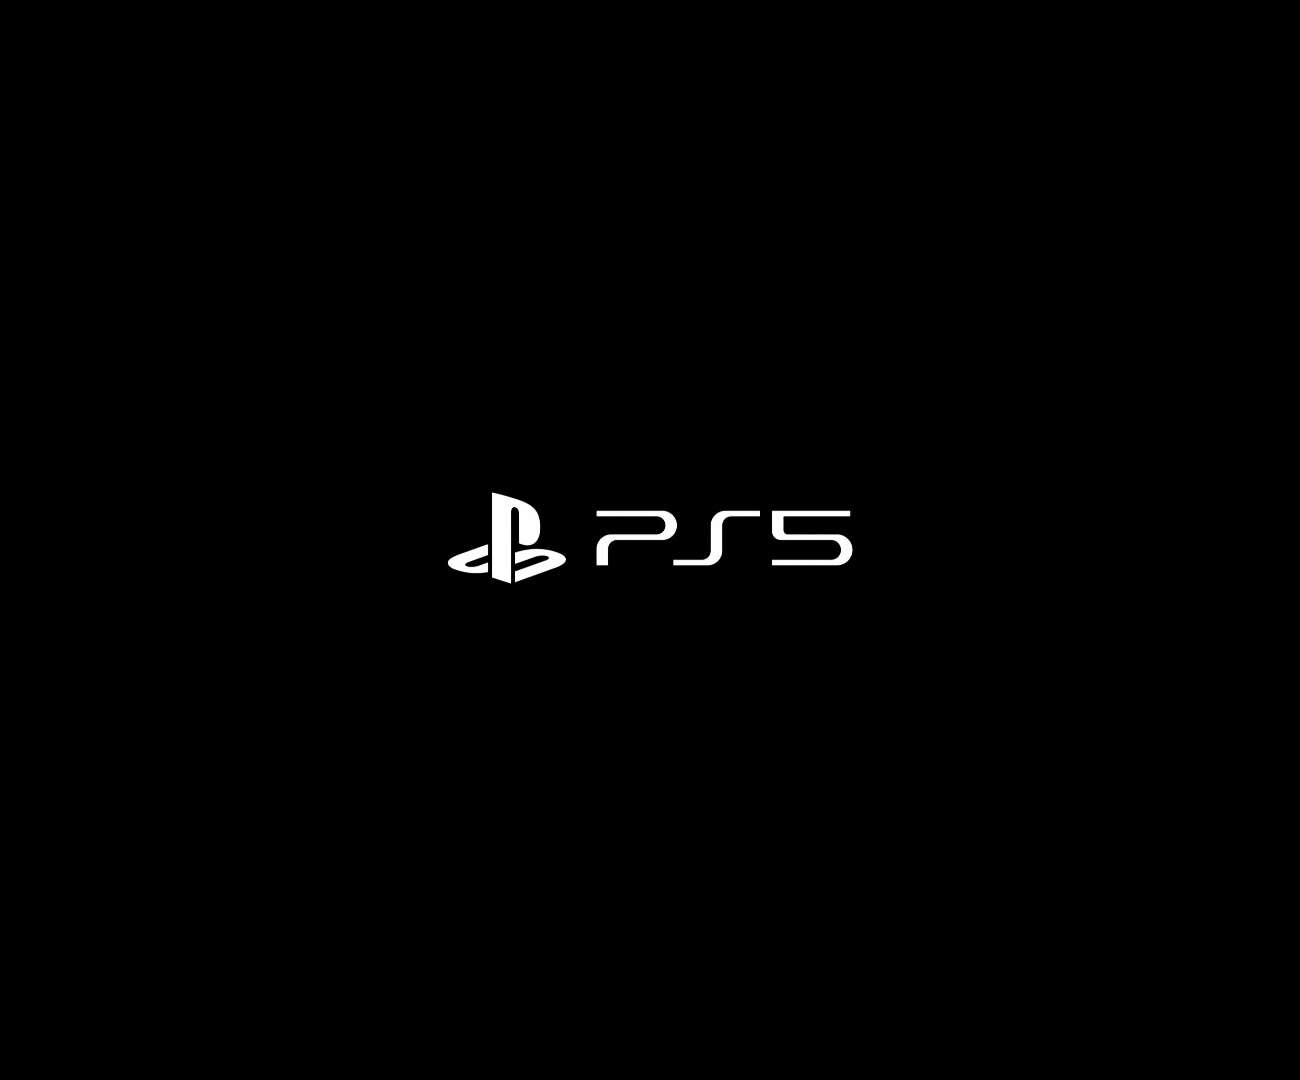 ps5, playstation 5, logo ps5